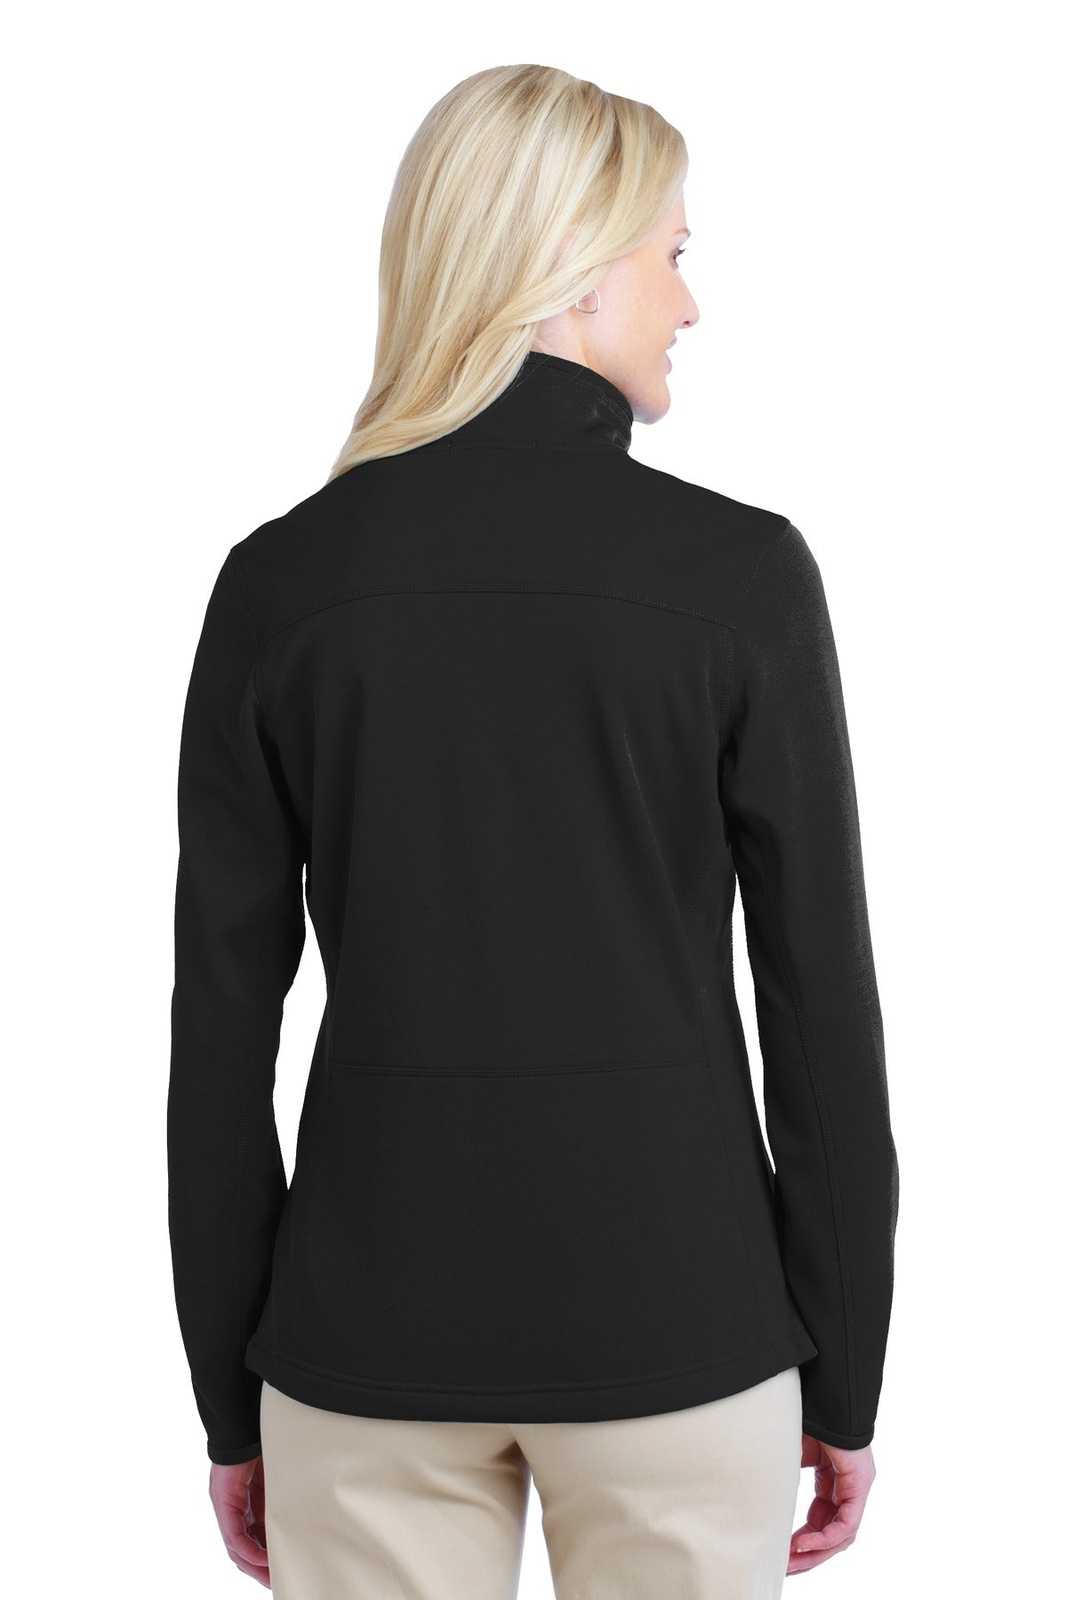 Port Authority L222 Ladies Pique Fleece Jacket - Black - HIT a Double - 1